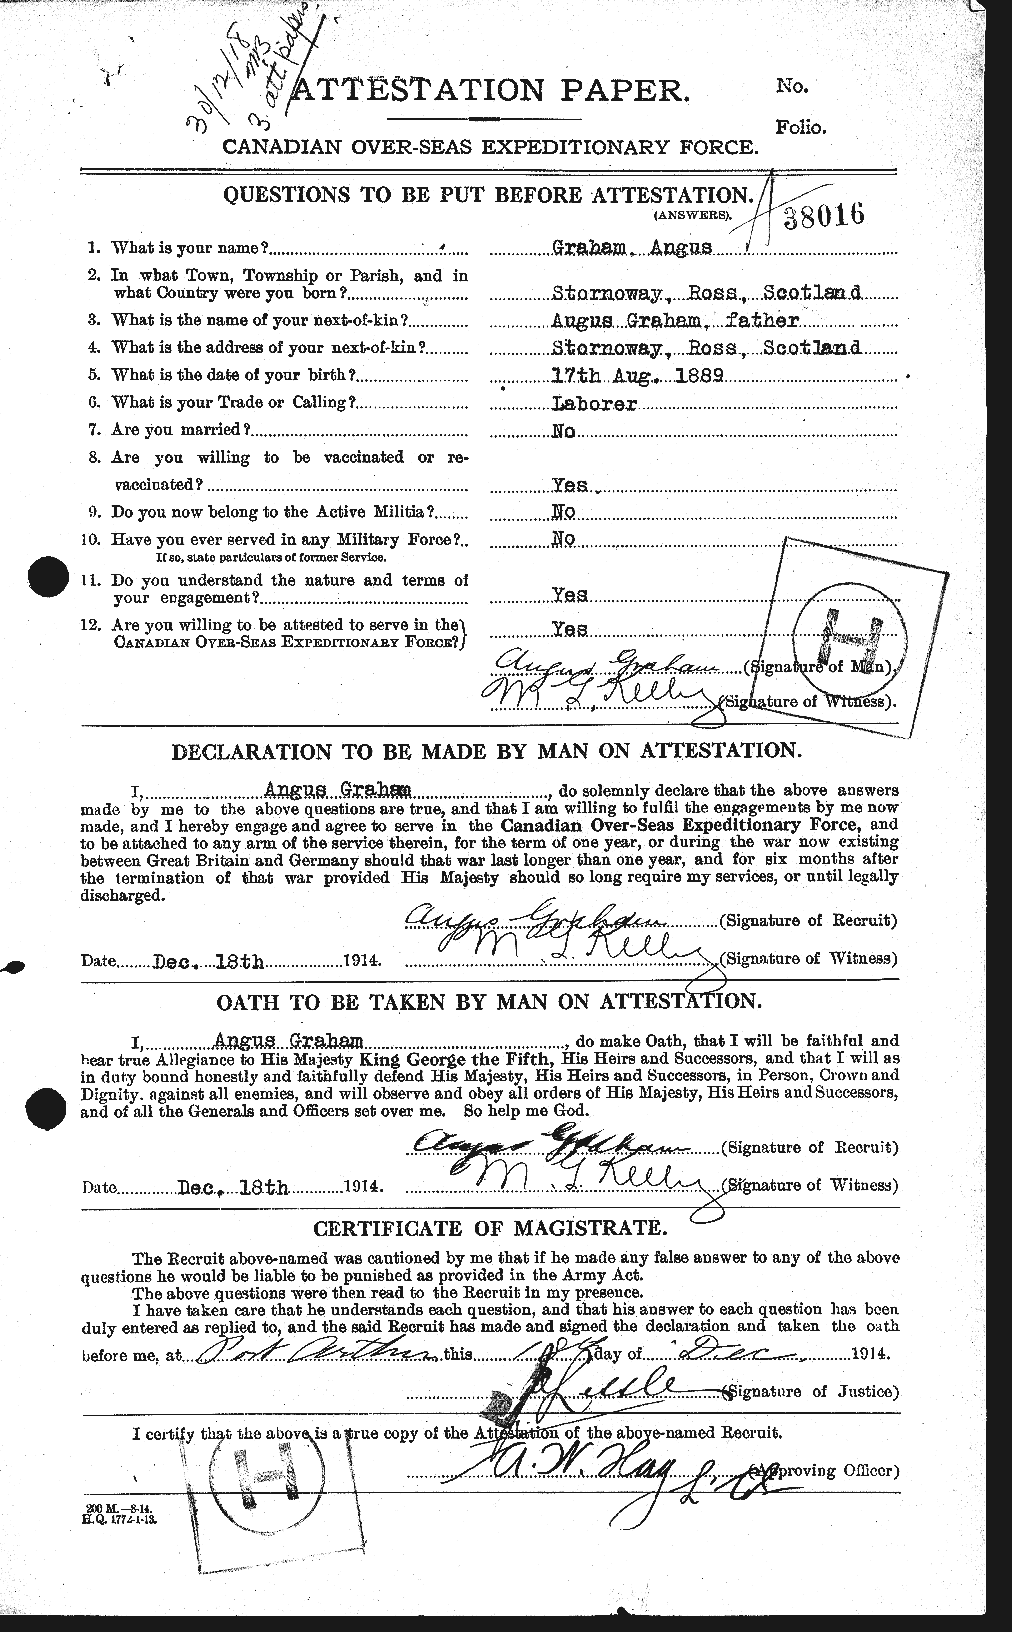 Dossiers du Personnel de la Première Guerre mondiale - CEC 359621a